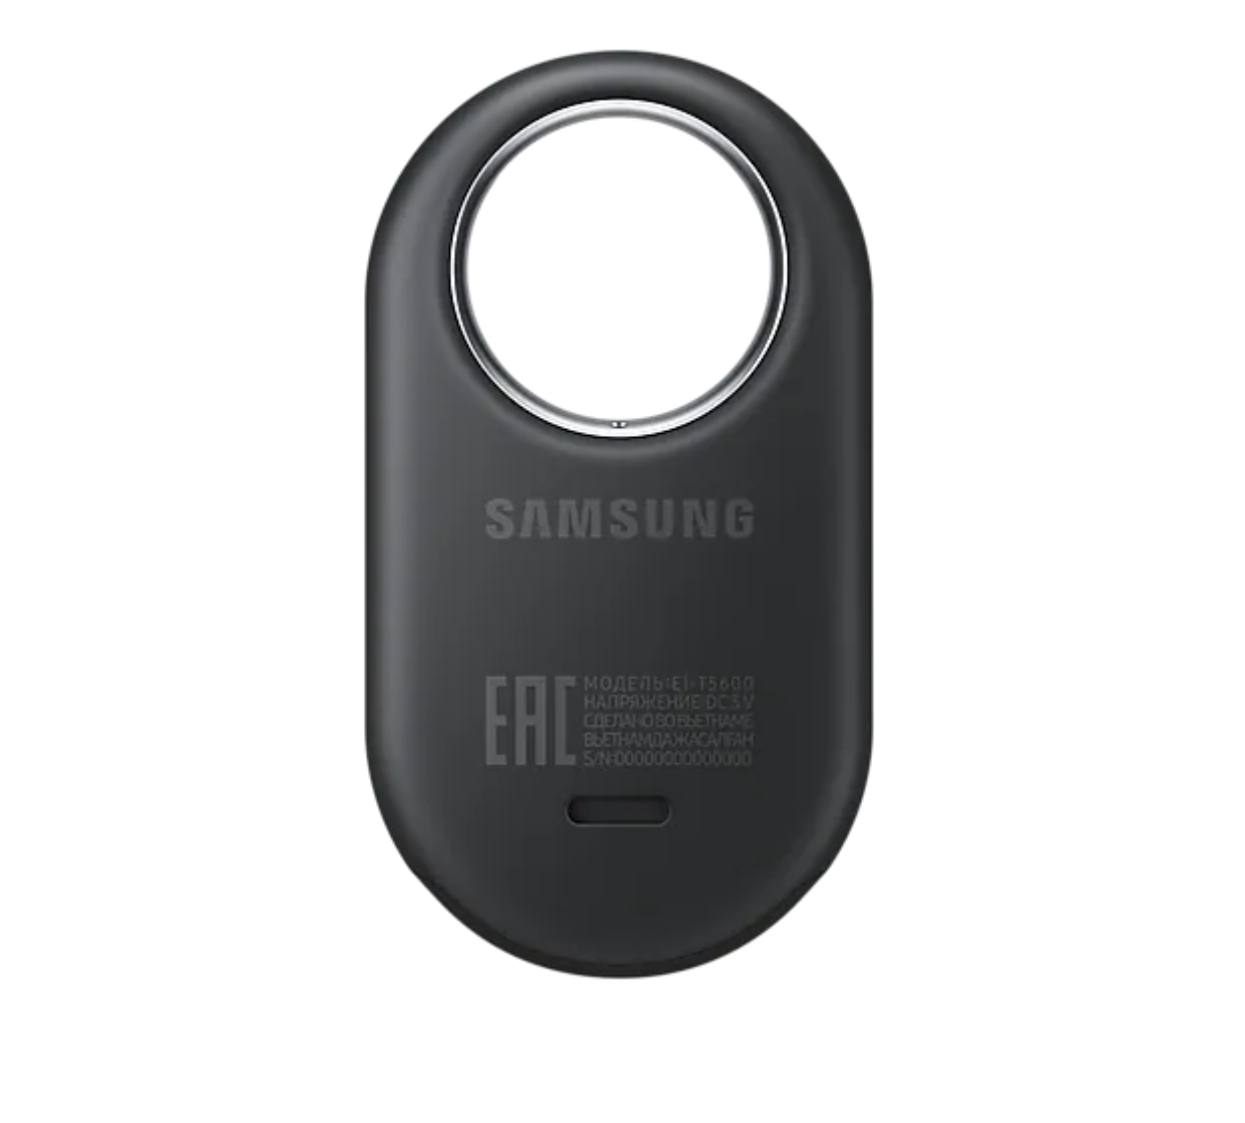 Thiết Bị Định Vị Theo Dõi Đồ Vật Samsung Galaxy Smart Tag 2 ( Model EI-T5600) - Hàng Chính Hãng